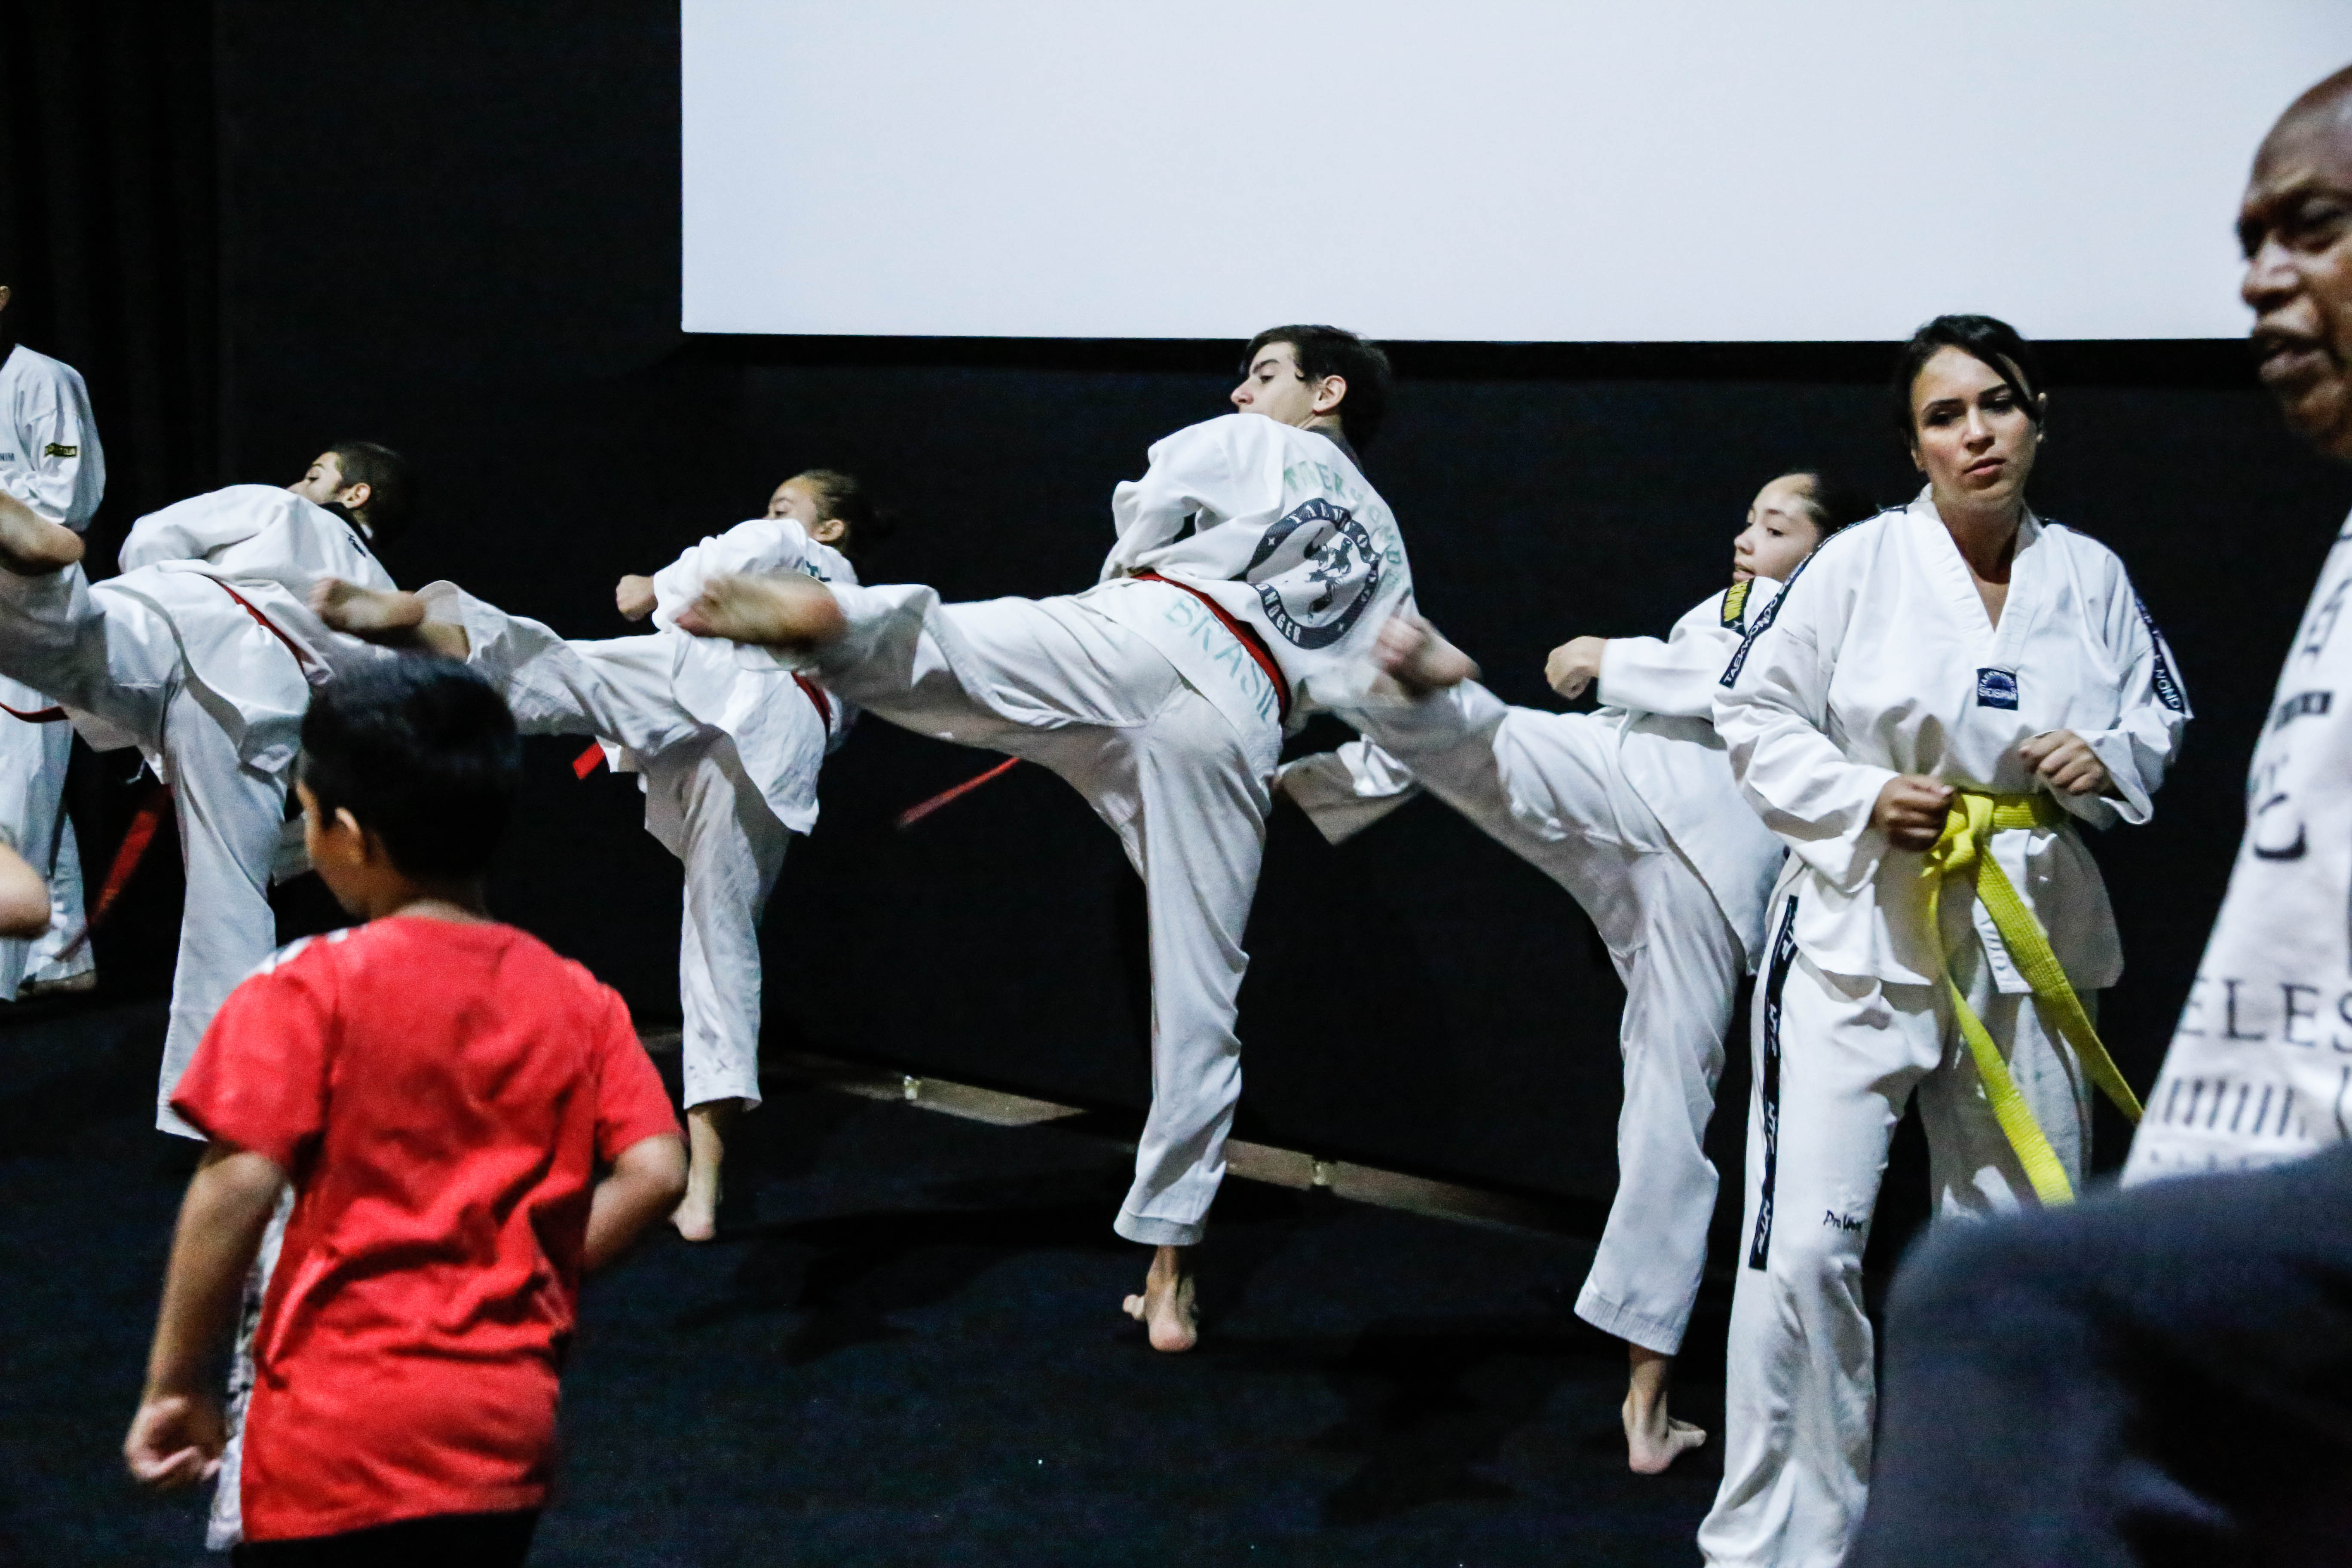 Apresentação de tae-kwon-do. Alunos chutam o ar em sincronia.